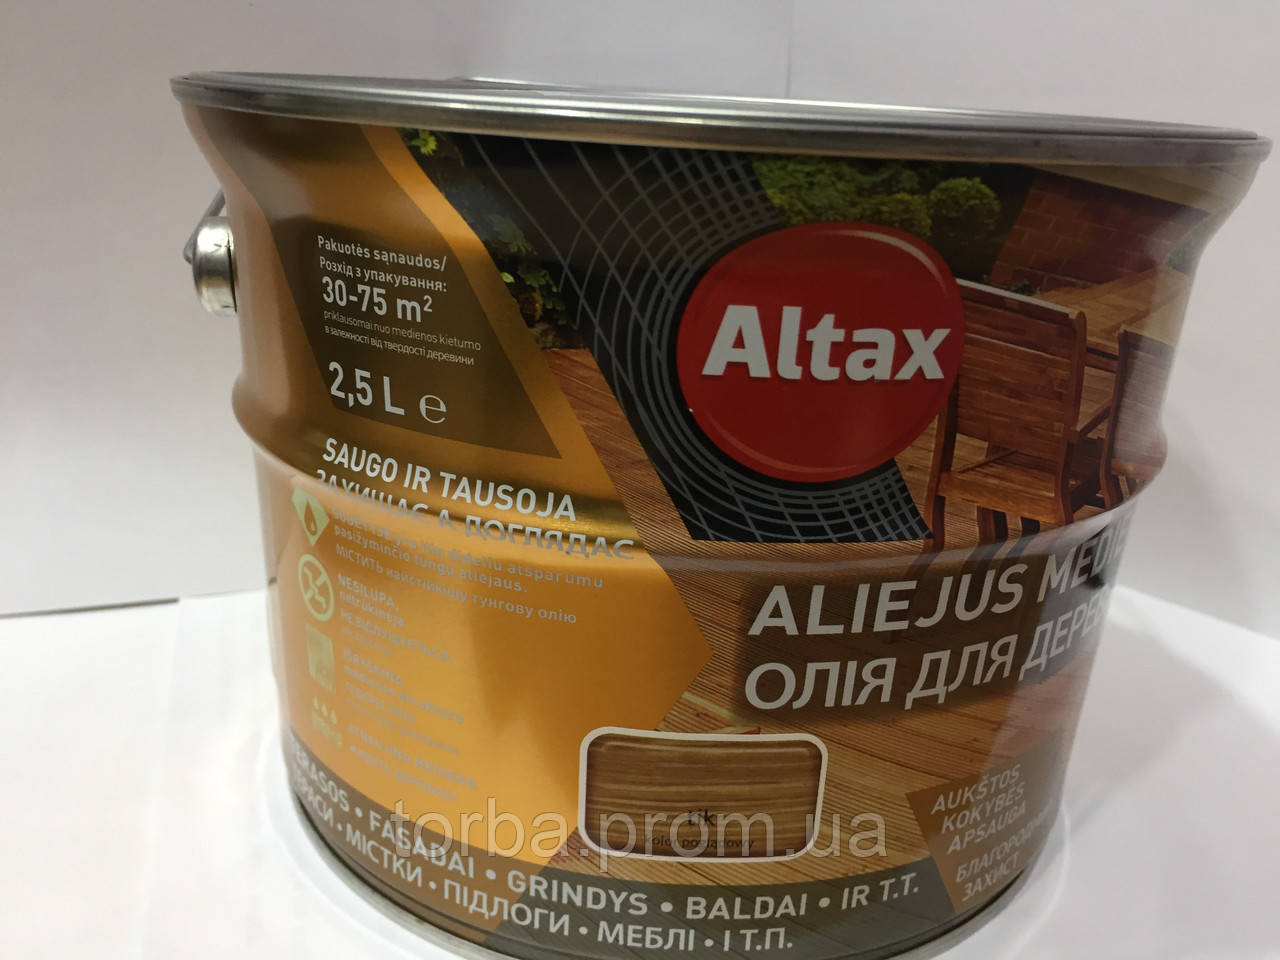 Масло для дерева Altax 2,5л ТІК